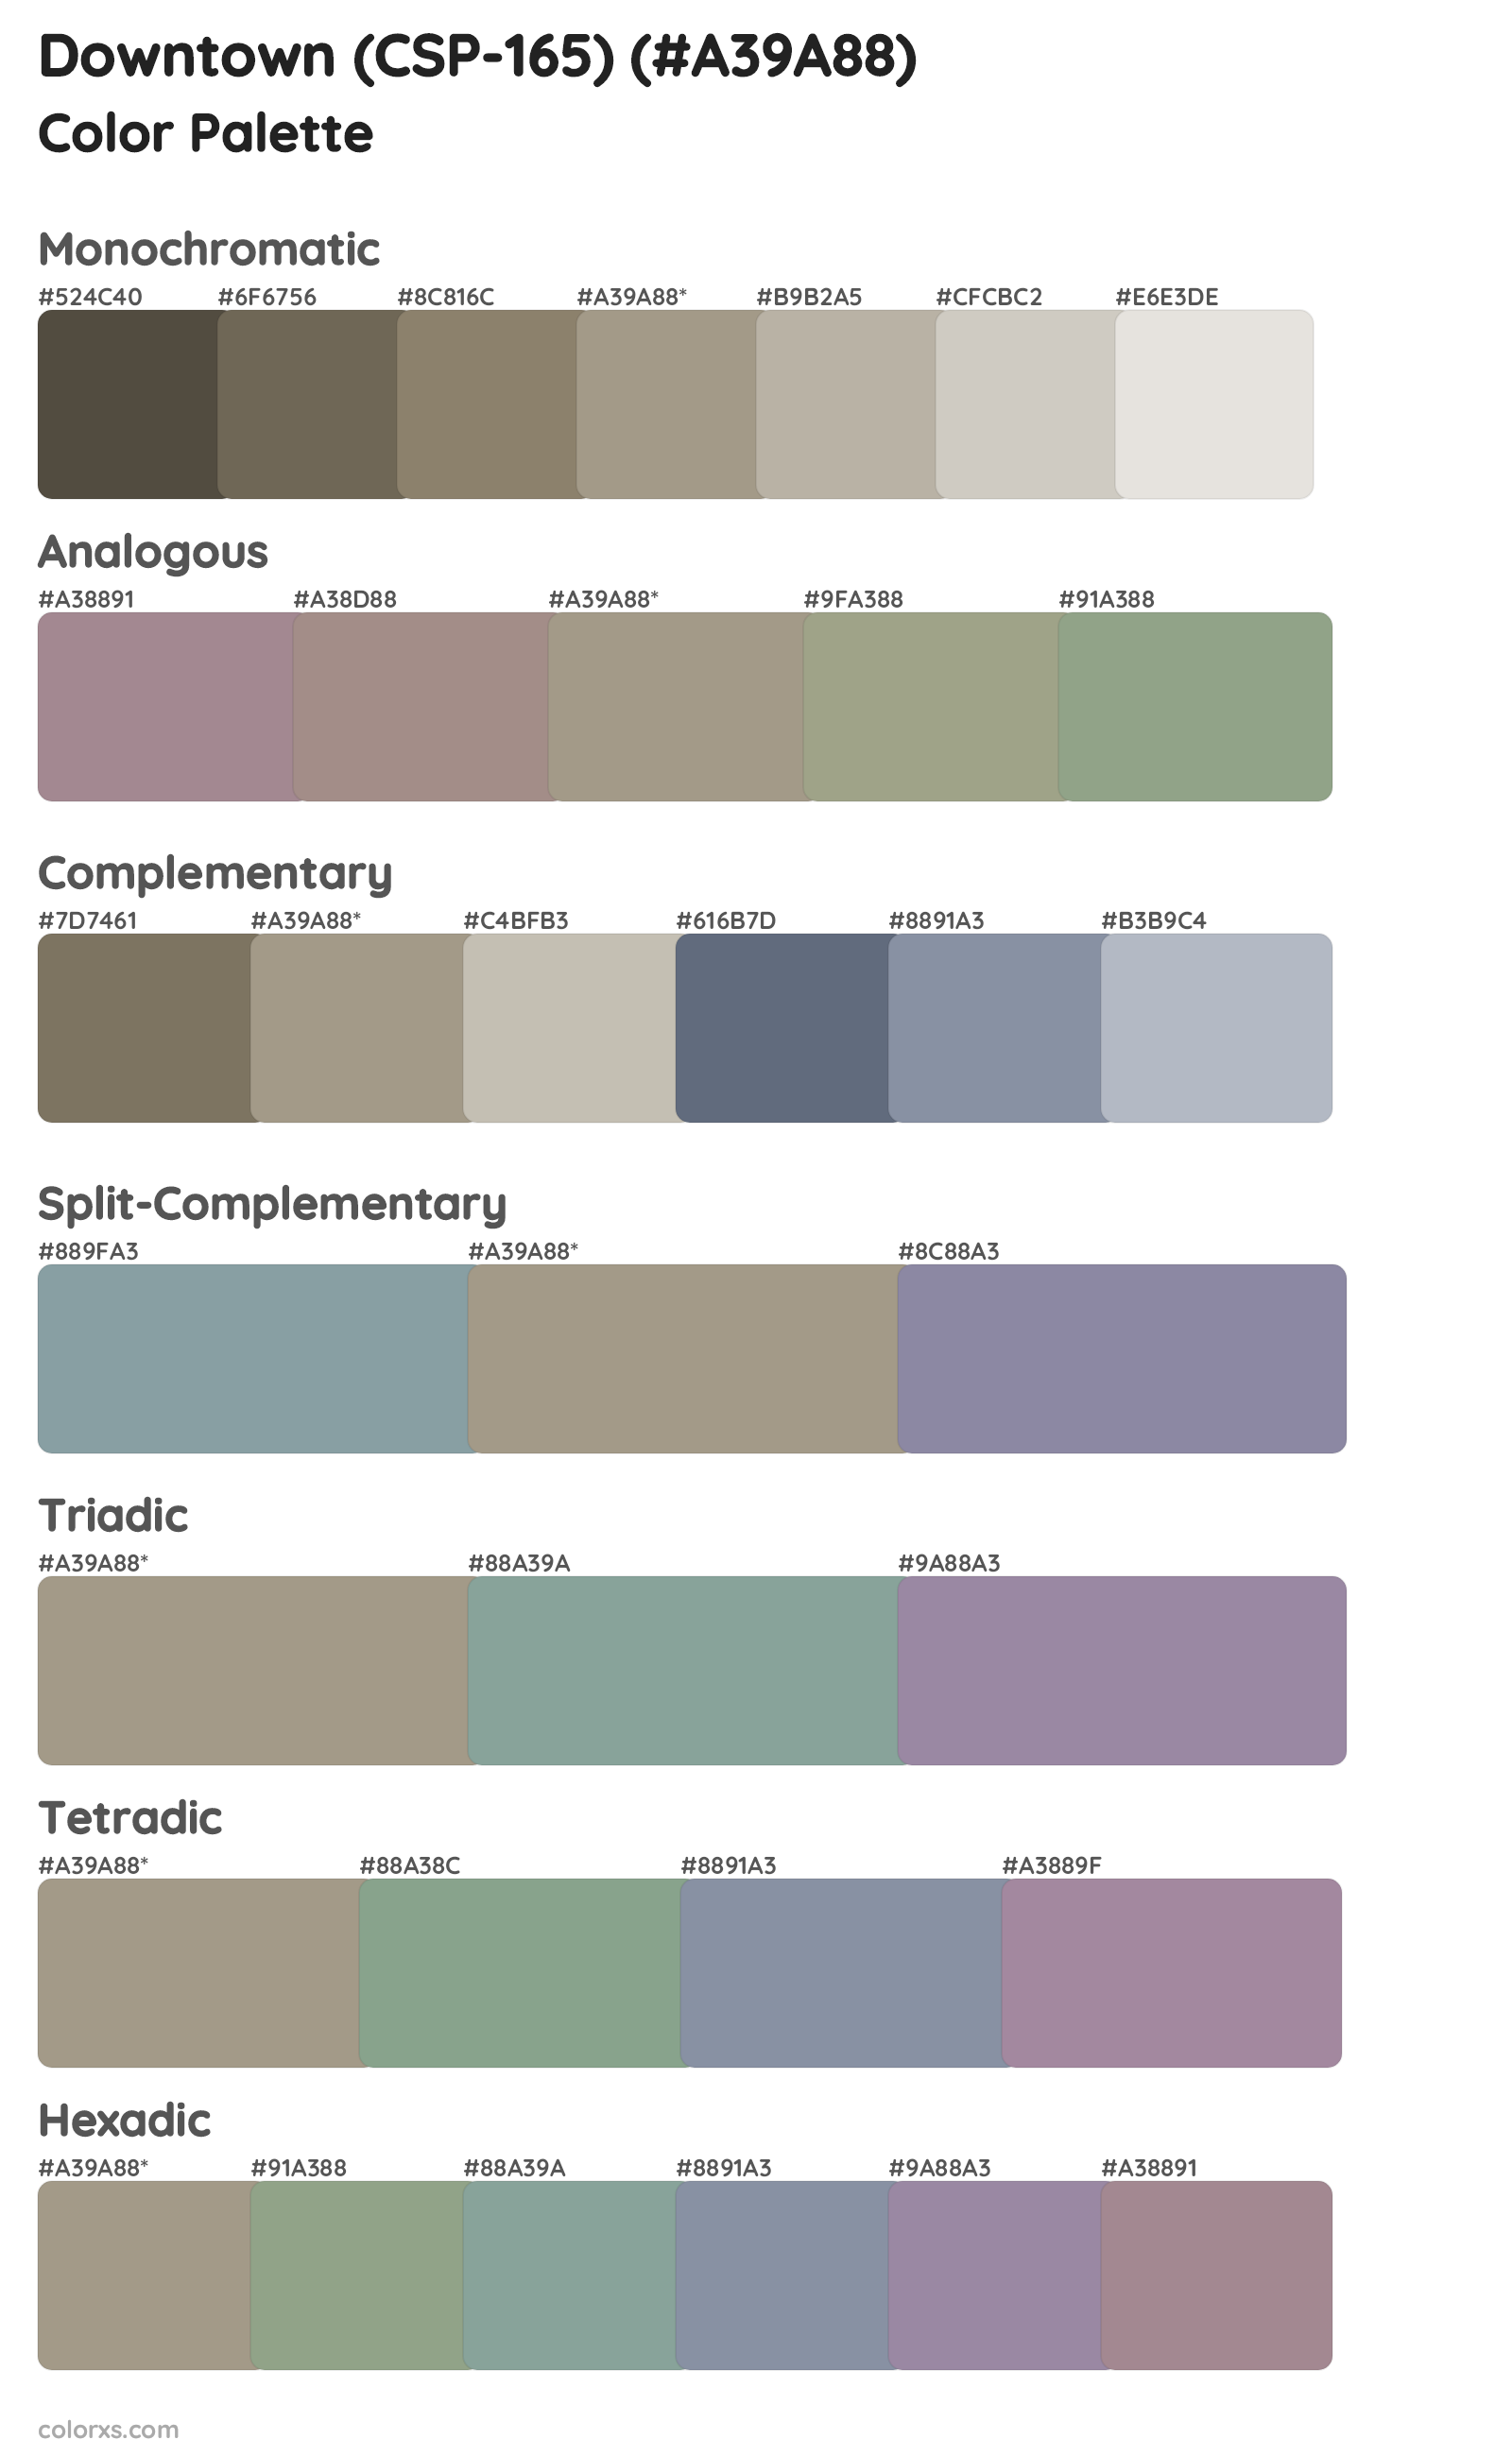 Downtown (CSP-165) Color Scheme Palettes